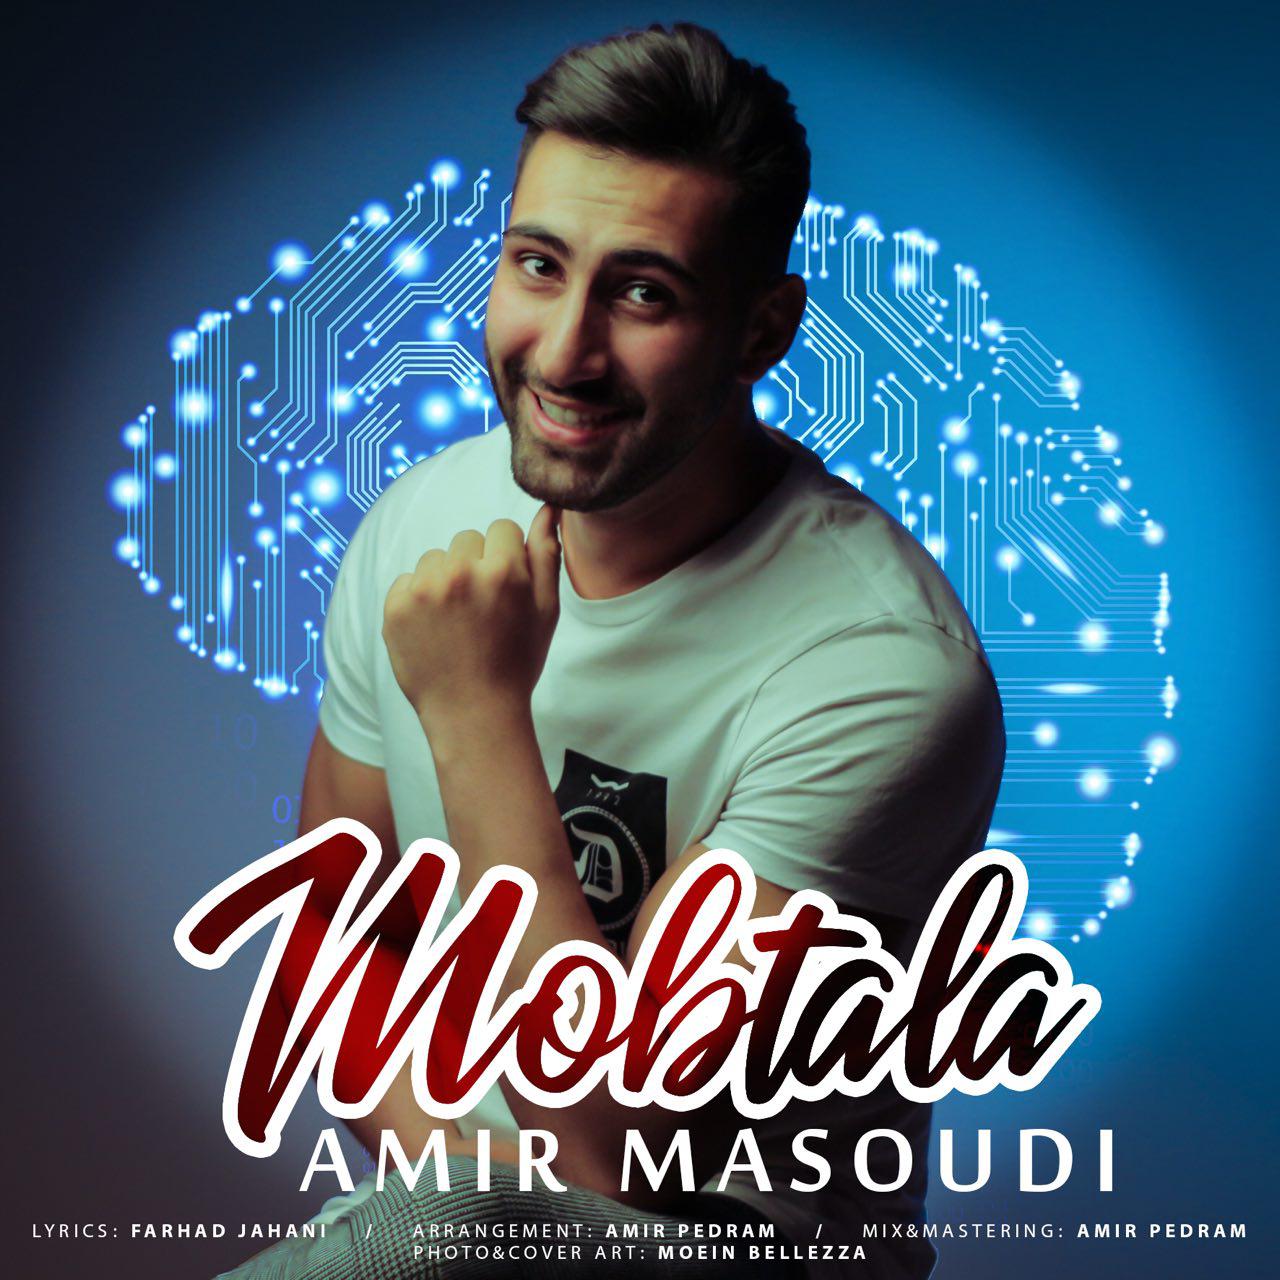  دانلود آهنگ جدید امیر مسعودی - مبتلا | Download New Music By Amir Masoudi - Mobtala